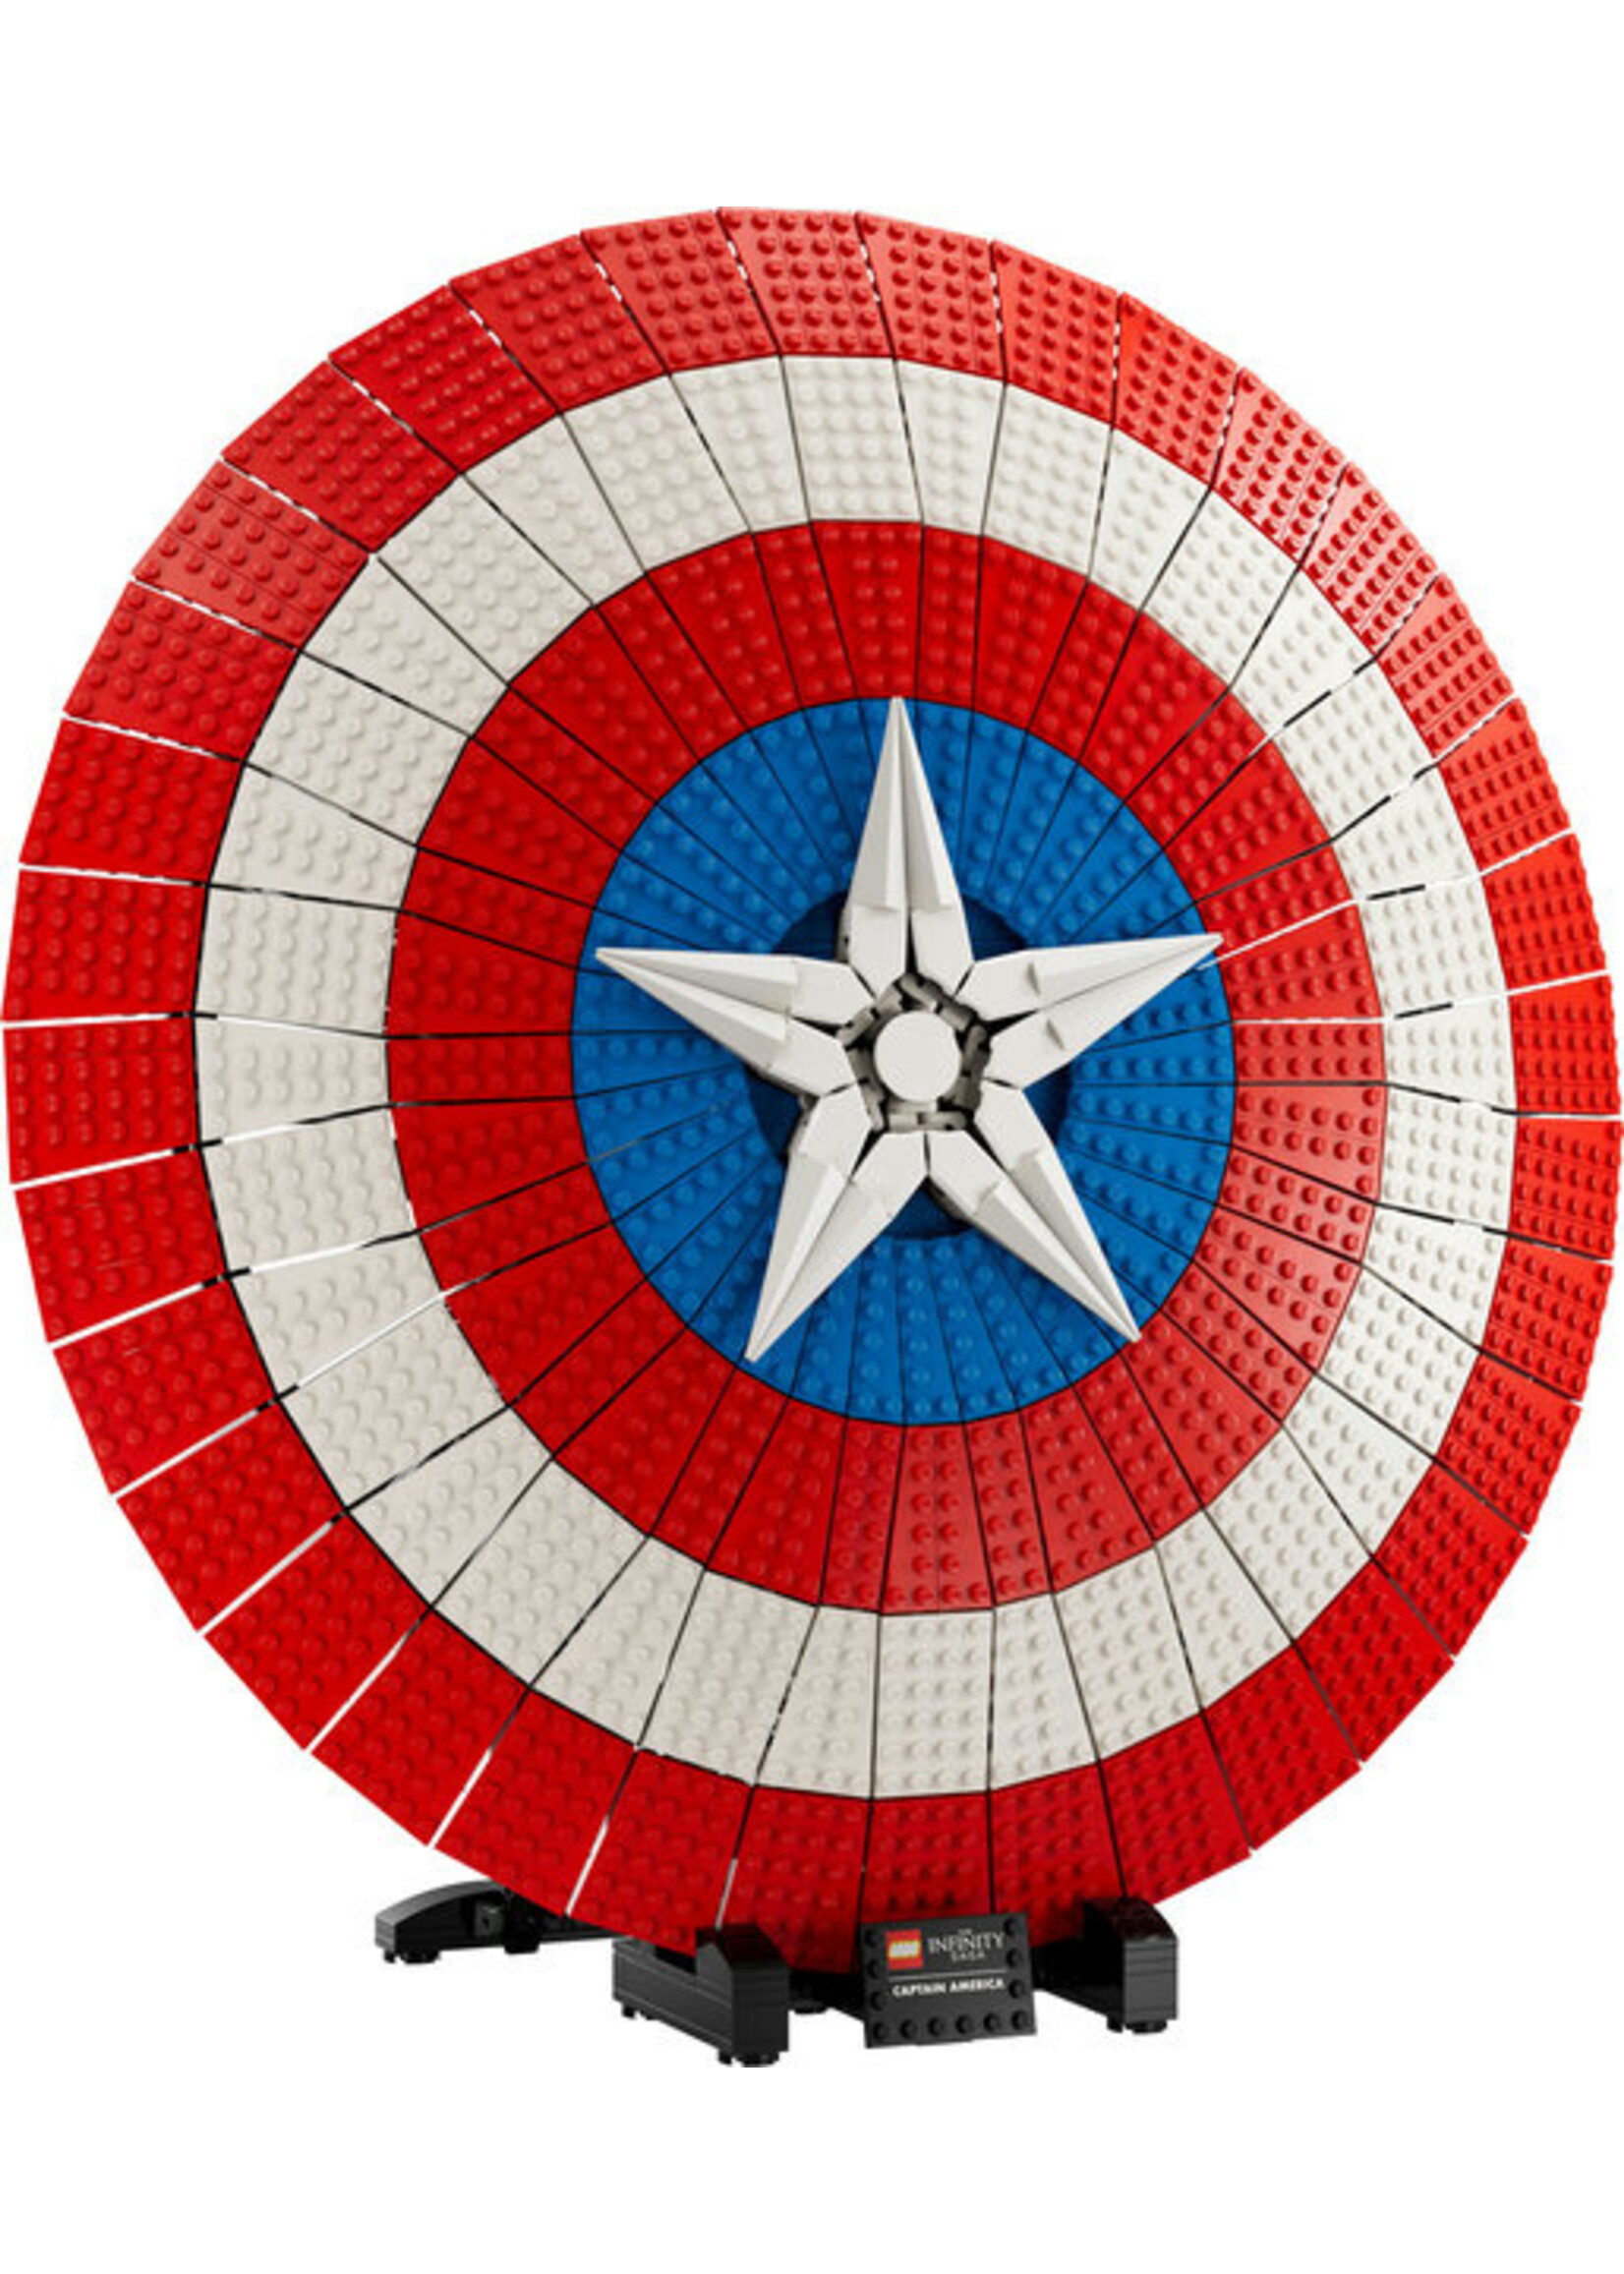 LEGO 76262 - Captain America's Shield